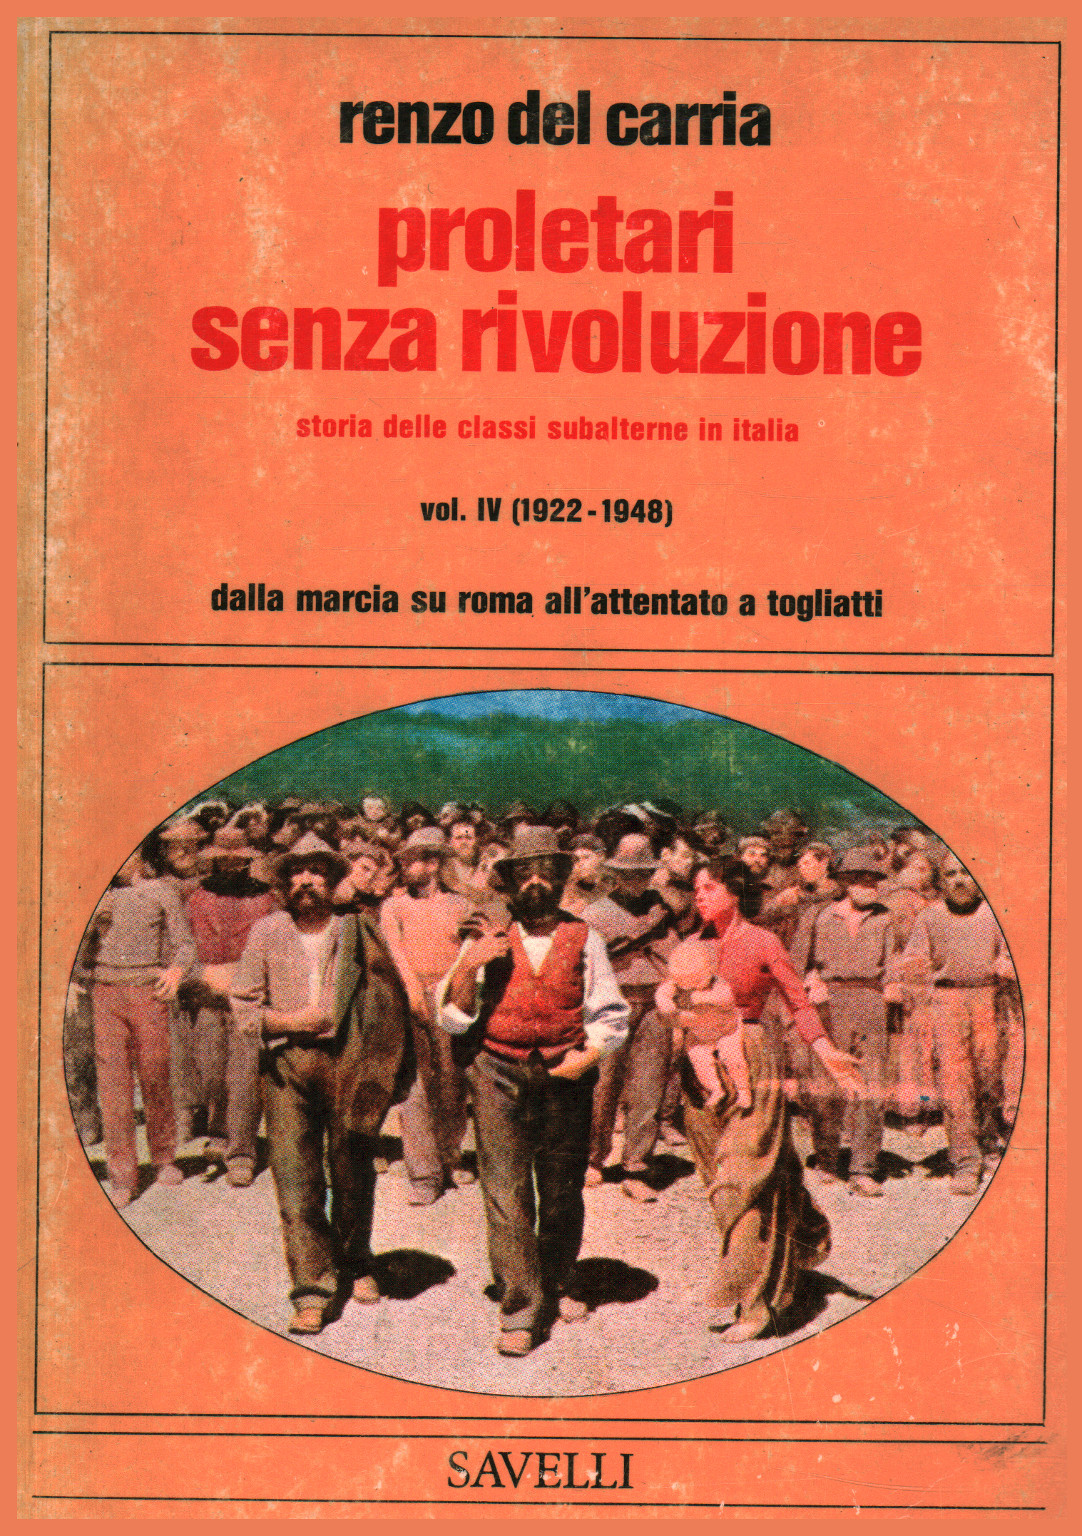 Proletari senza rivoluzione Volume IV, Storia dell, s.a.